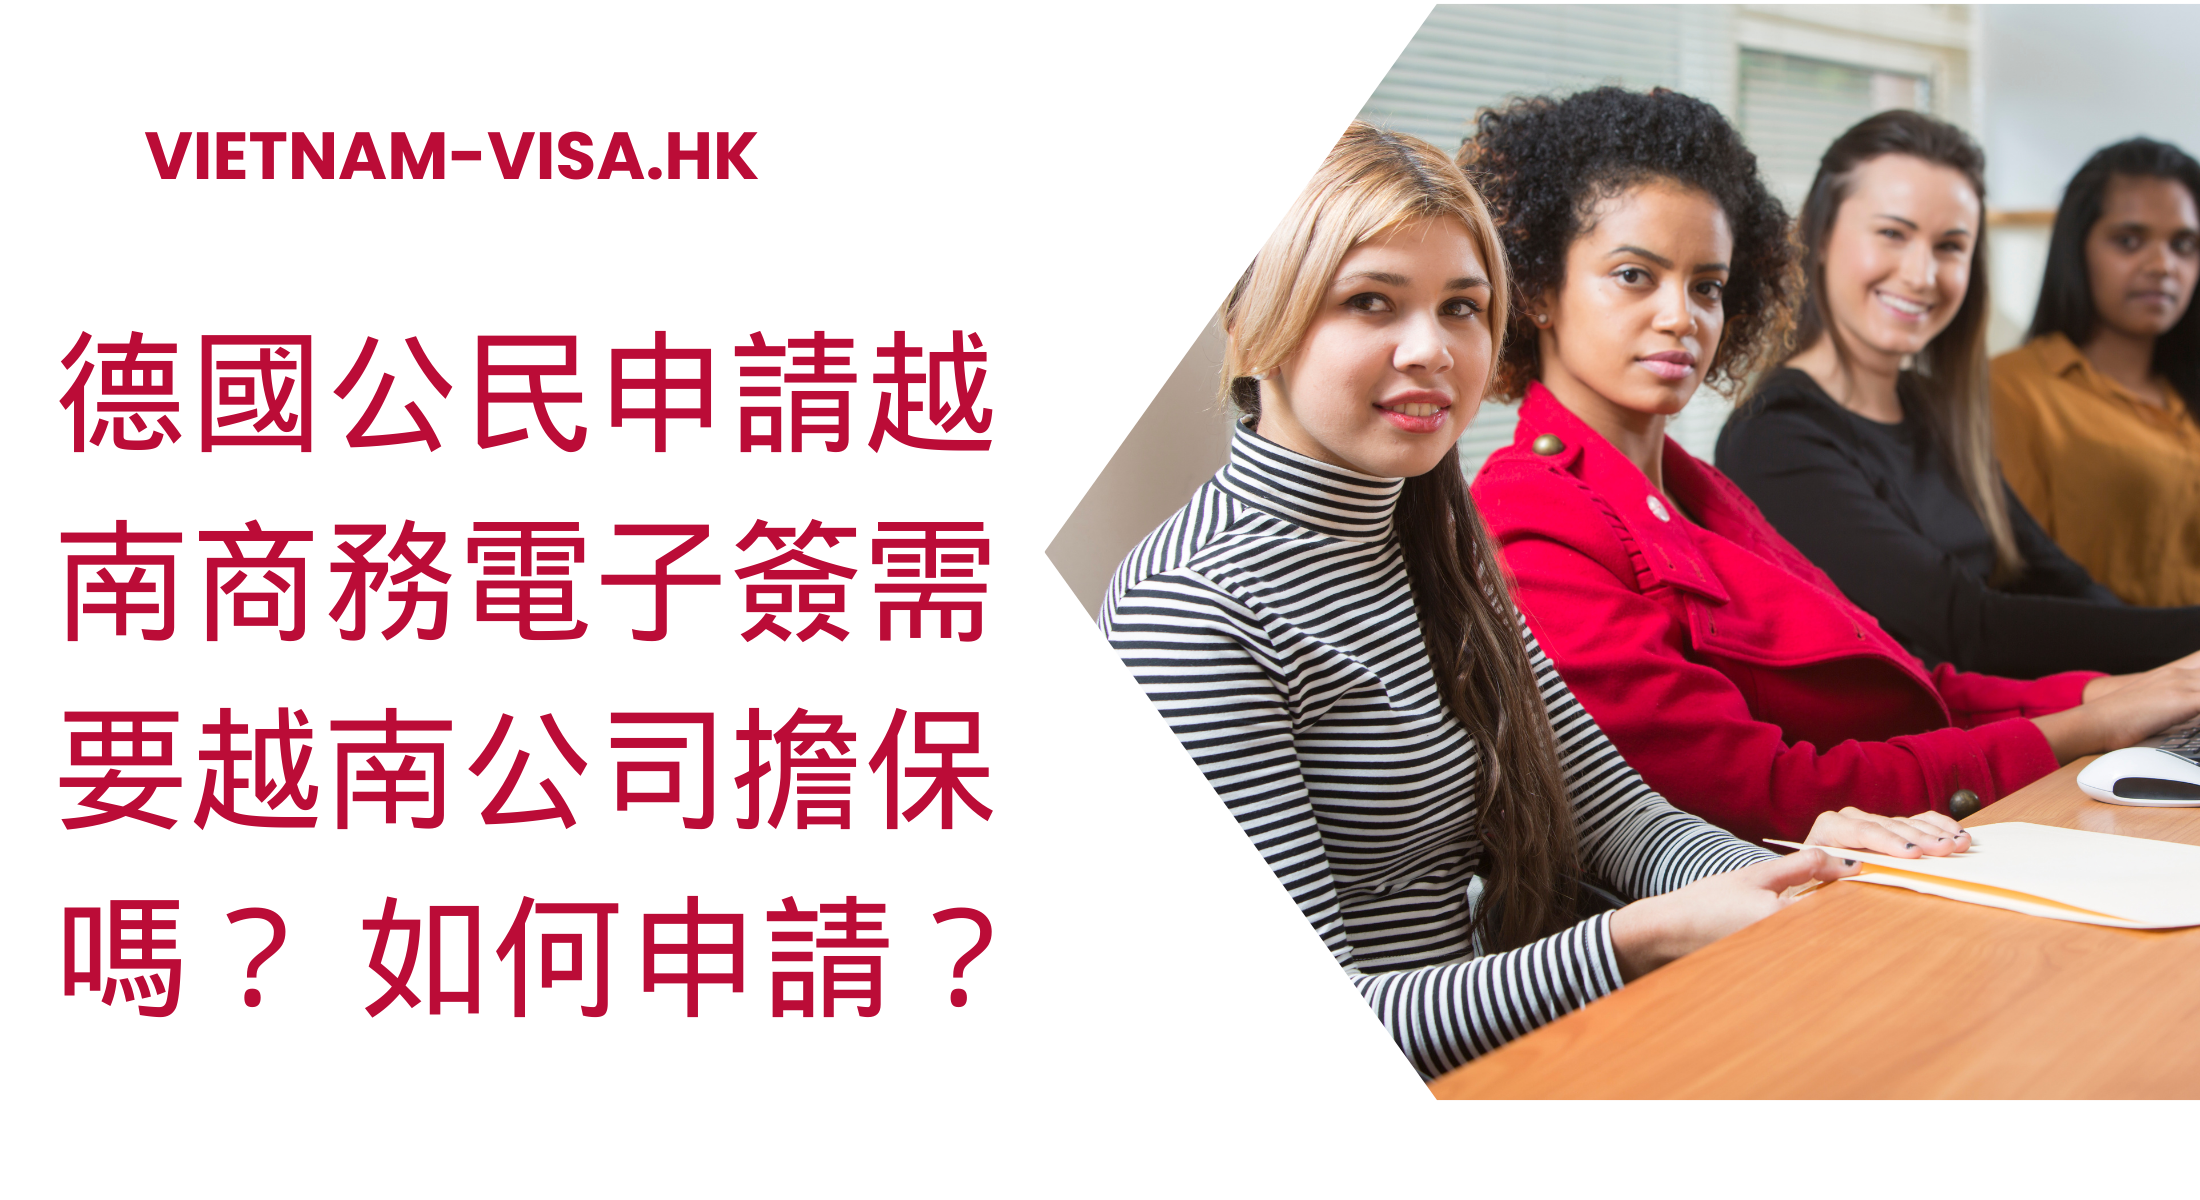 德國公民申請越南商務電子簽需要越南公司擔保嗎？ 如何申請？